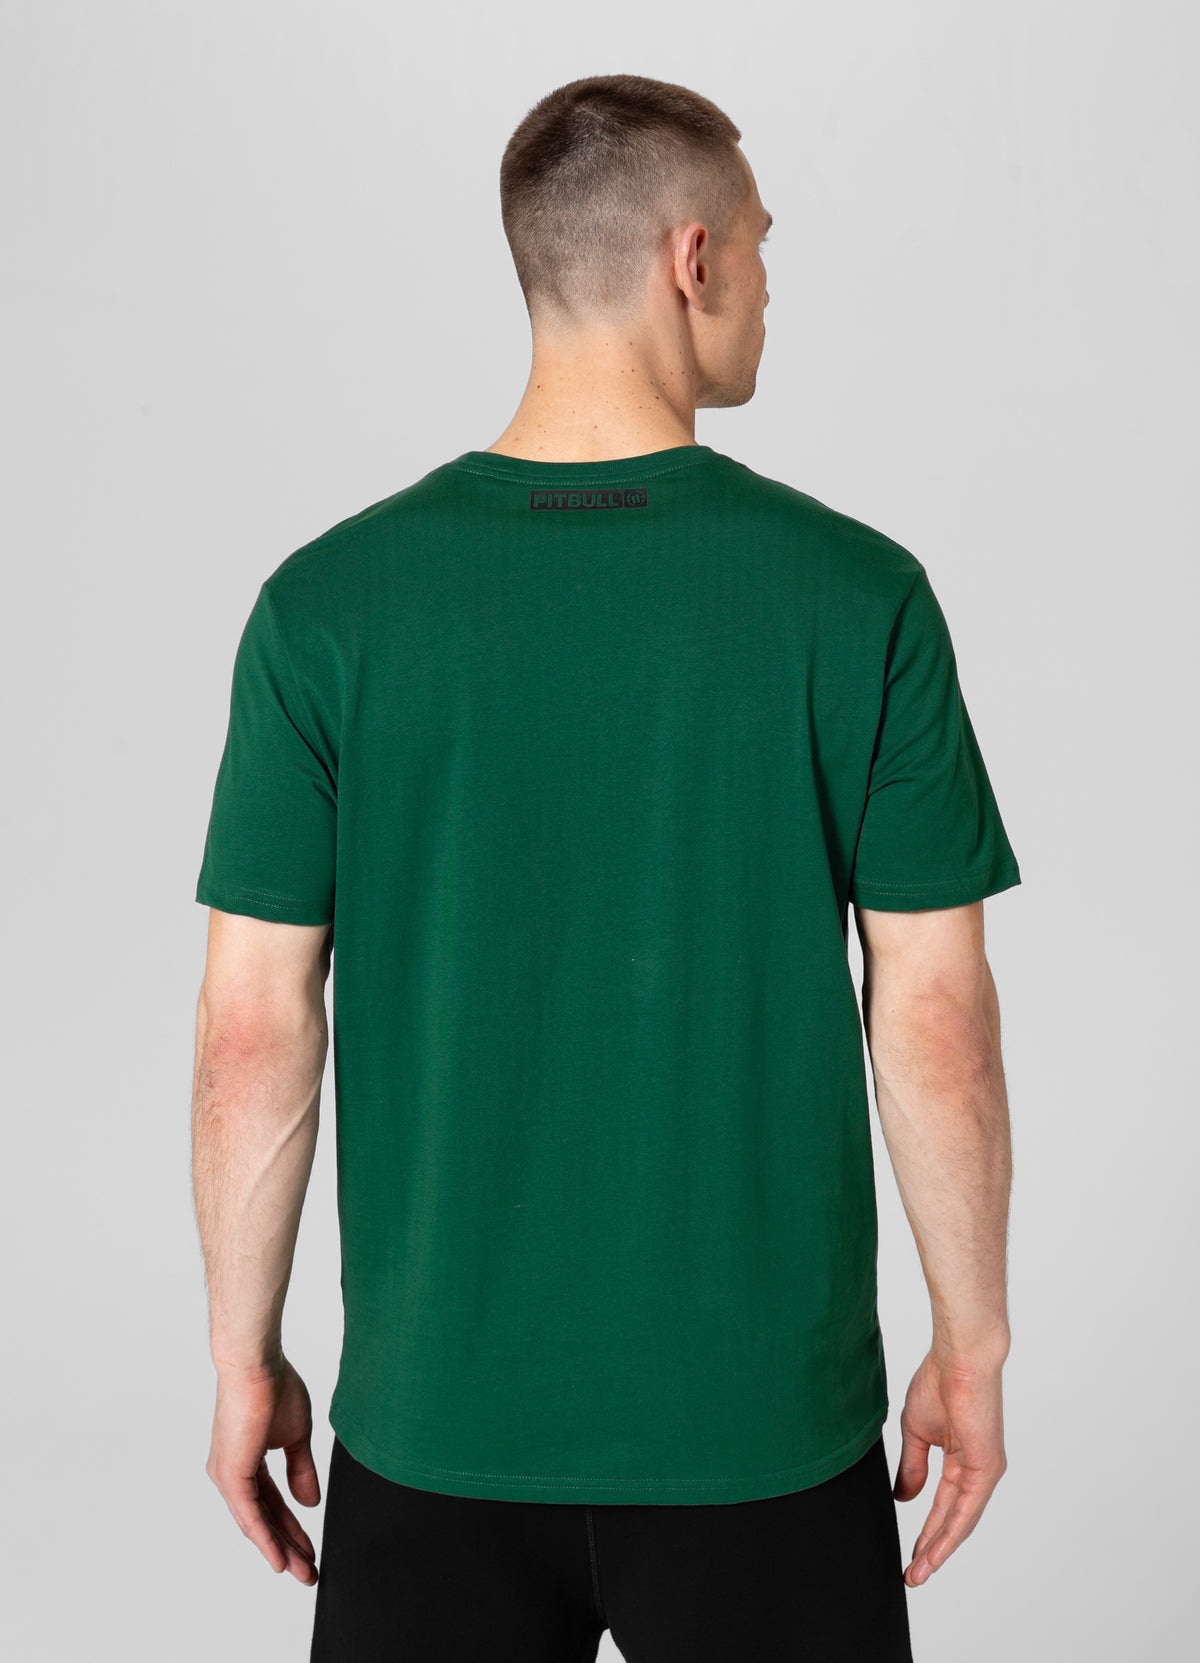 HILLTOP Lightweight Leaf Green T-shirt - Pitbullstore.eu